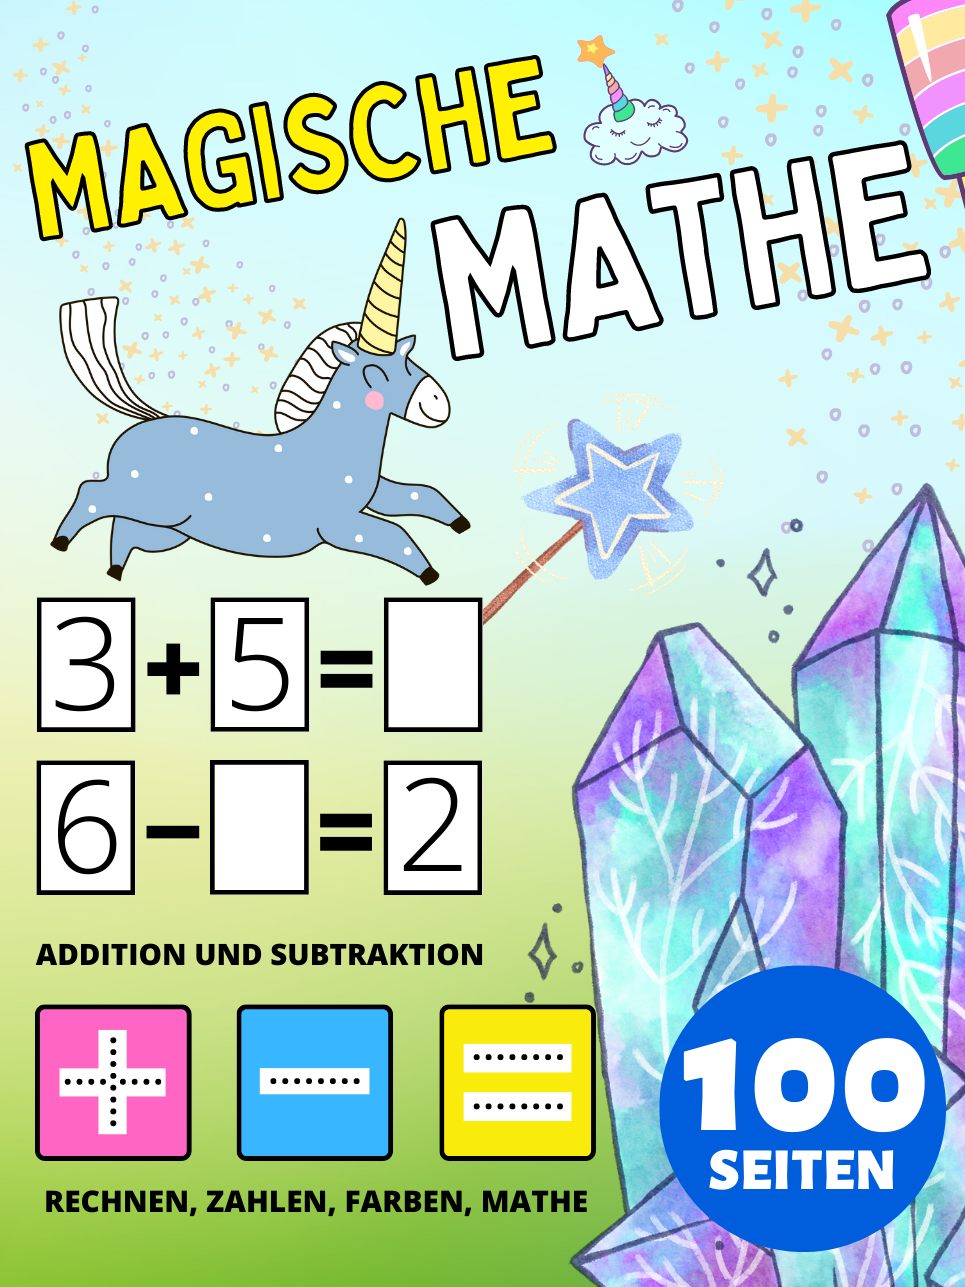 Vorschule Magische Mathe Aktivitätsbuch für Kinder ab 2 Jahre, Addition und Subtraktion, Plus und Minus